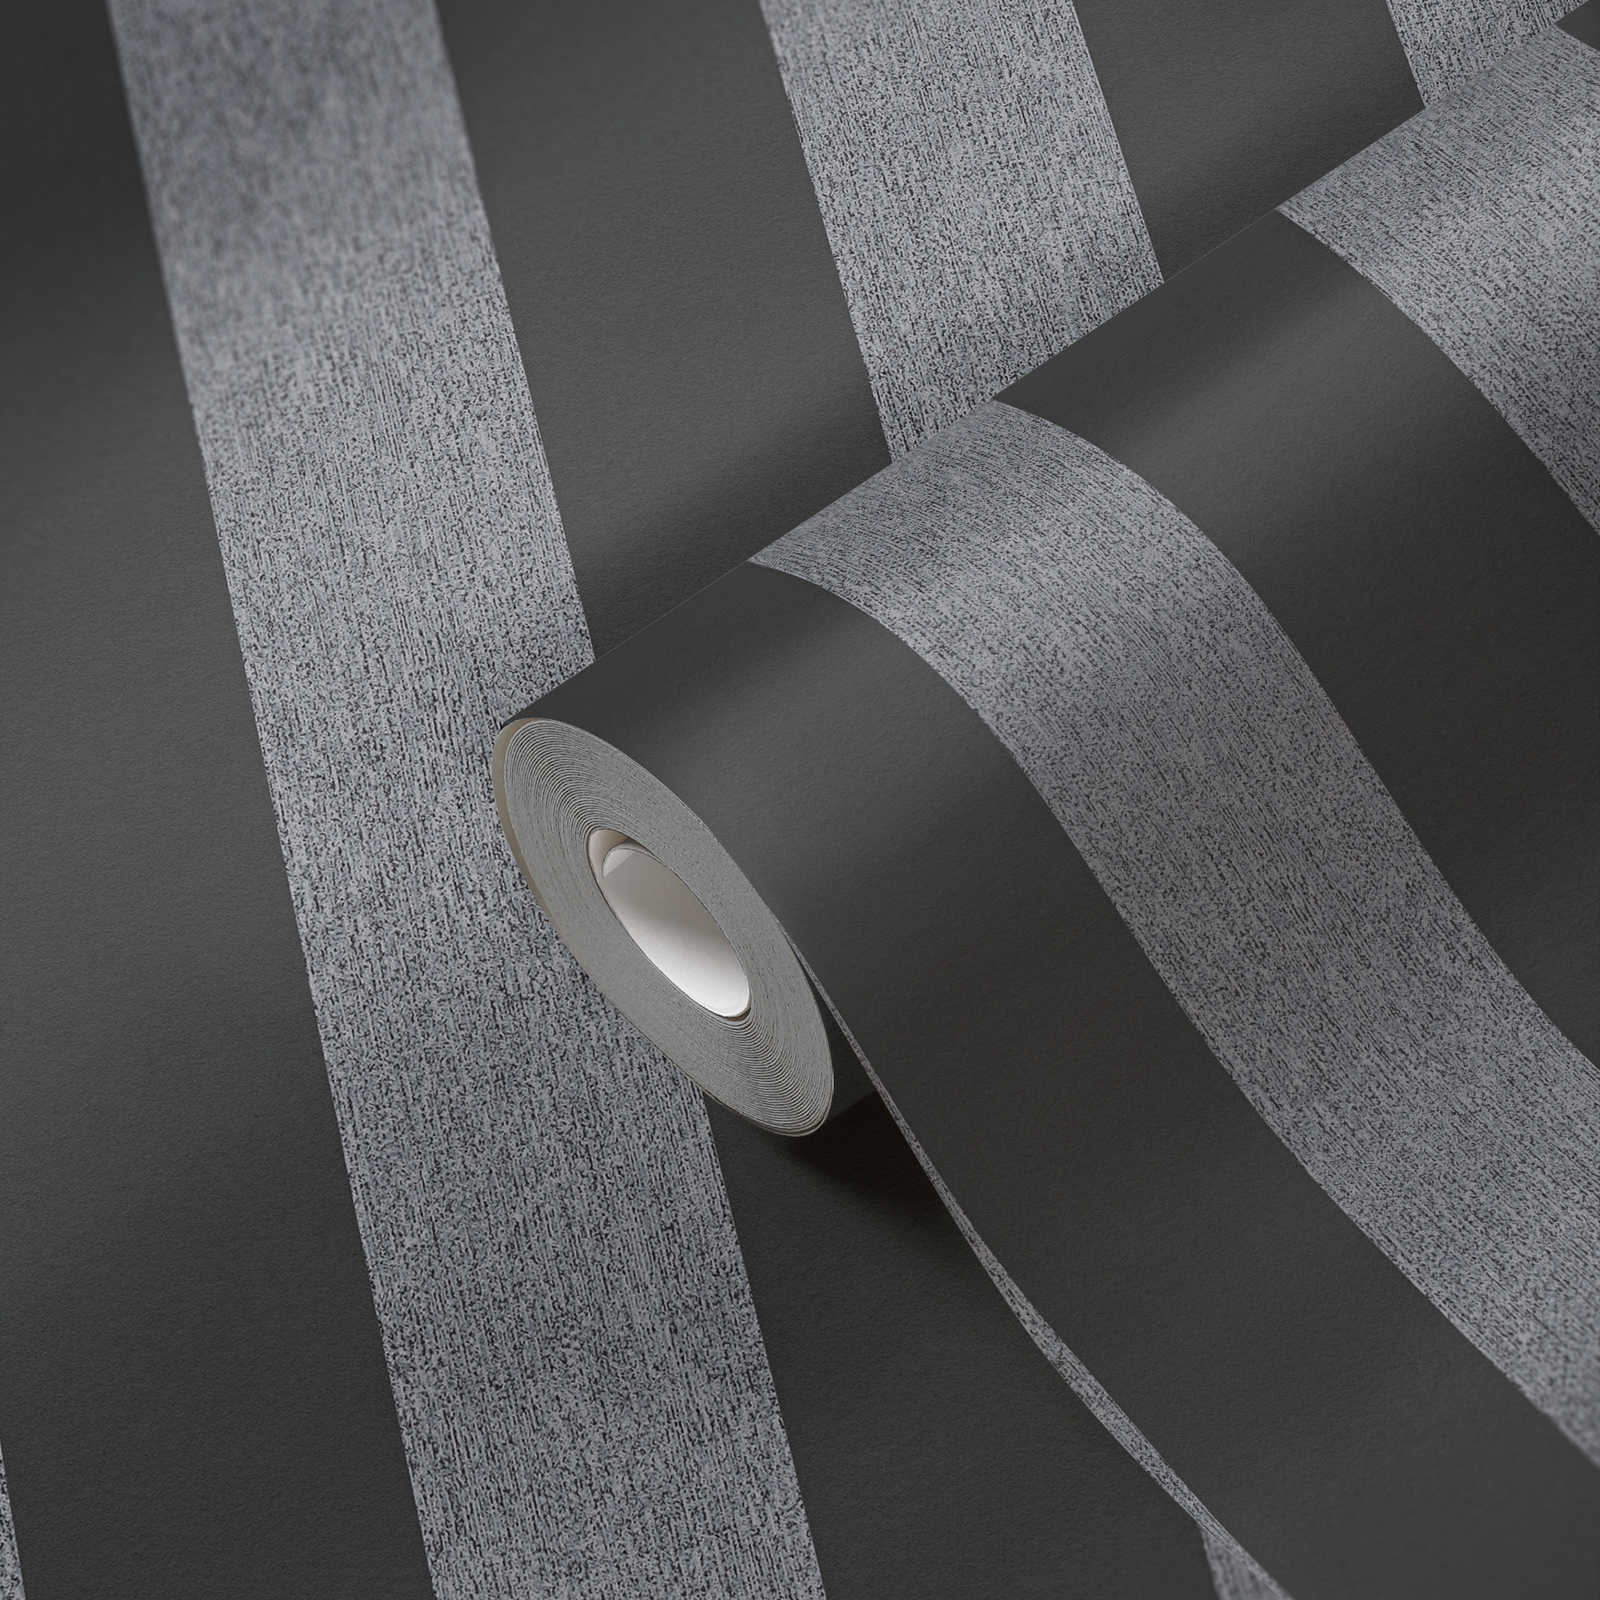             Papel pintado no tejido de rayas con textura mate - negro, gris
        